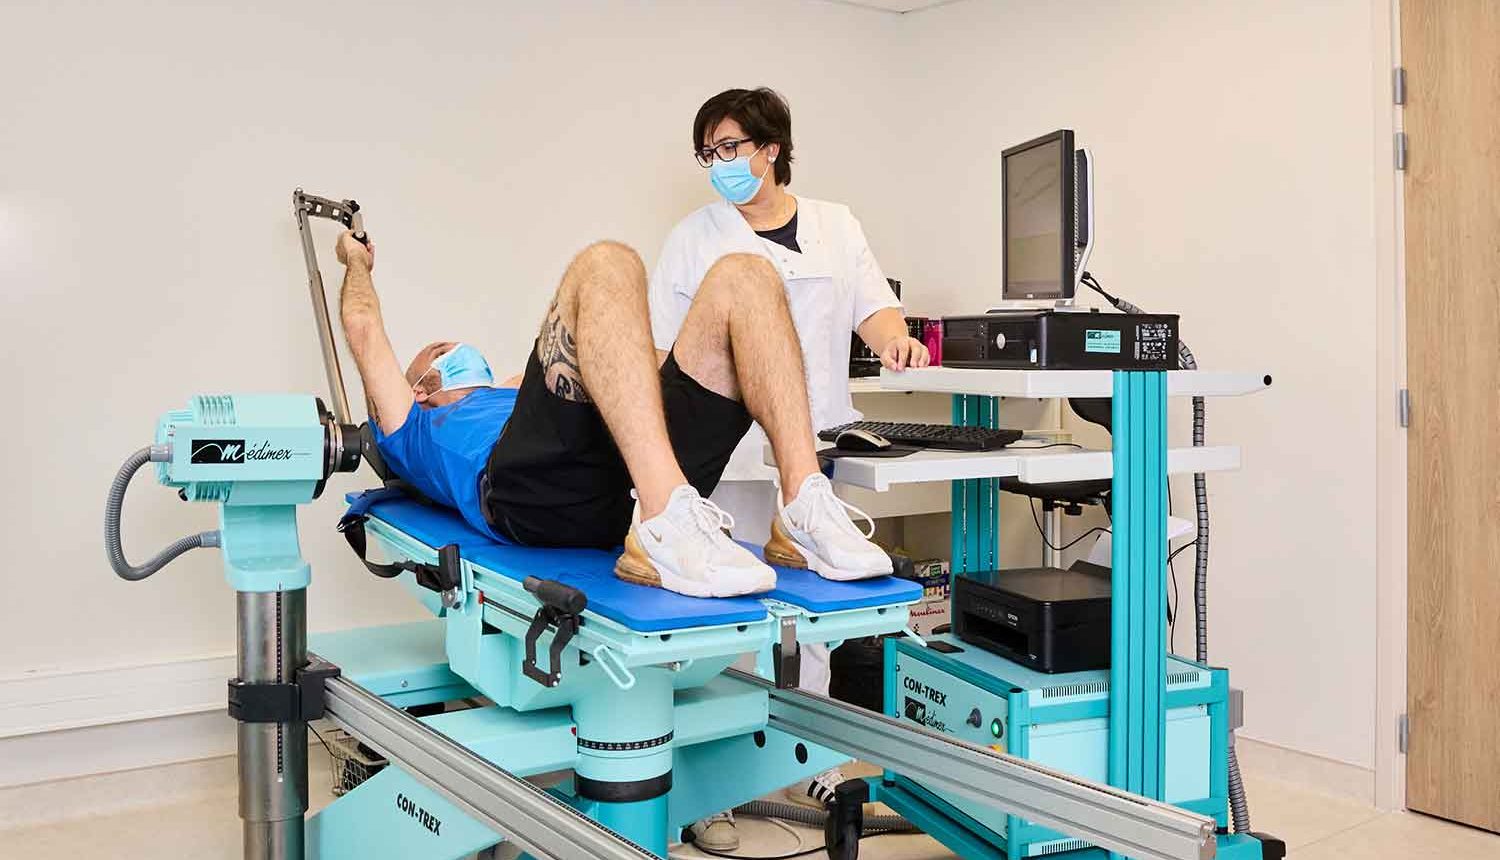 Infirmière débout guidant son patient en tenue de sport allongé sur une machine médicale